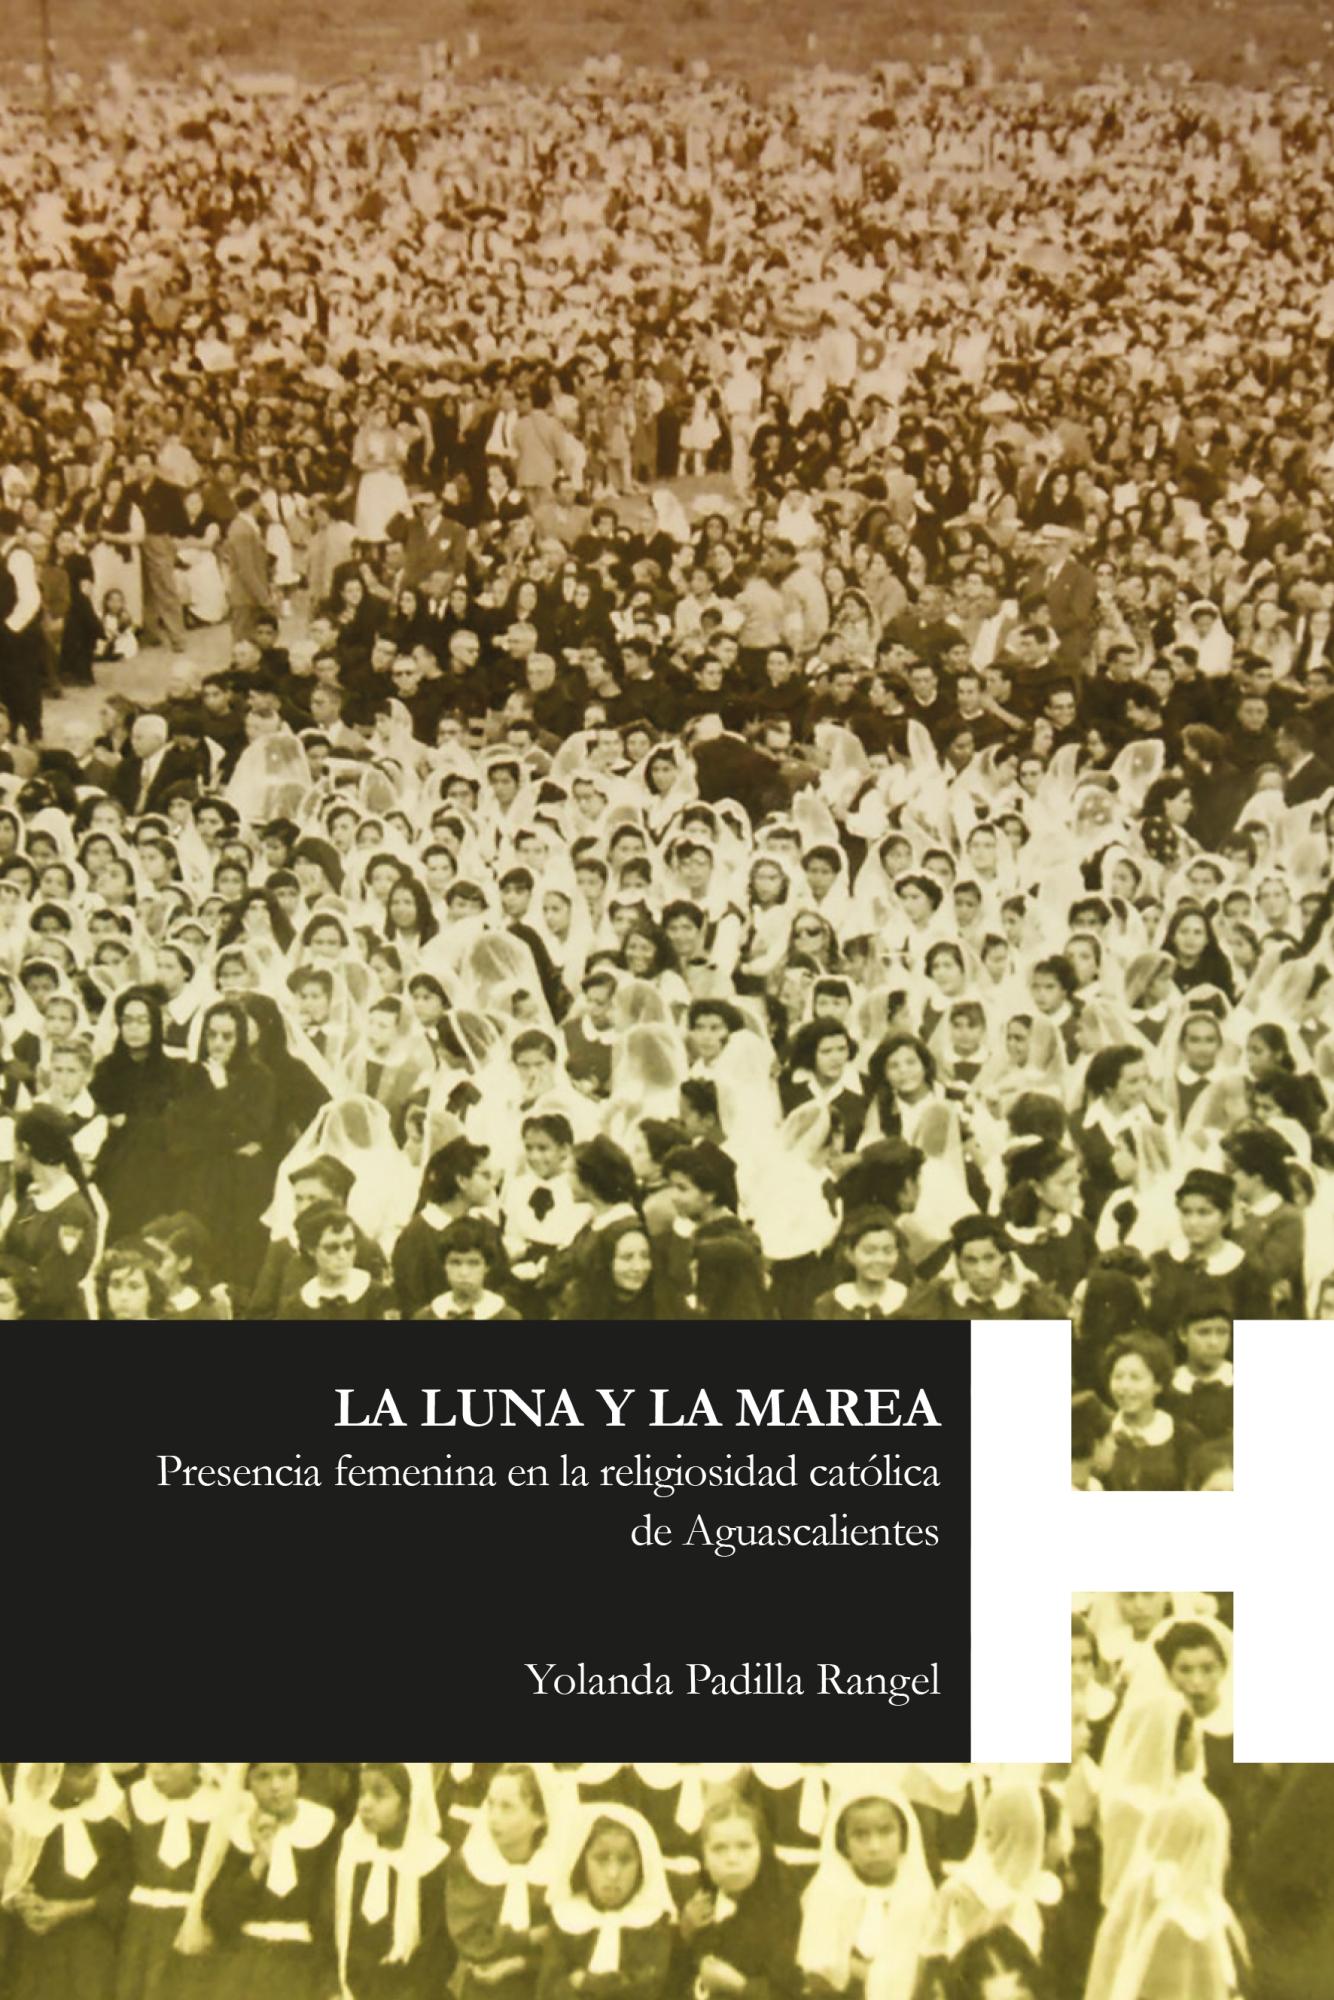 LA LUNA Y LA MAREA. Presencia femenina en la religiosidad católica de Aguascalientes